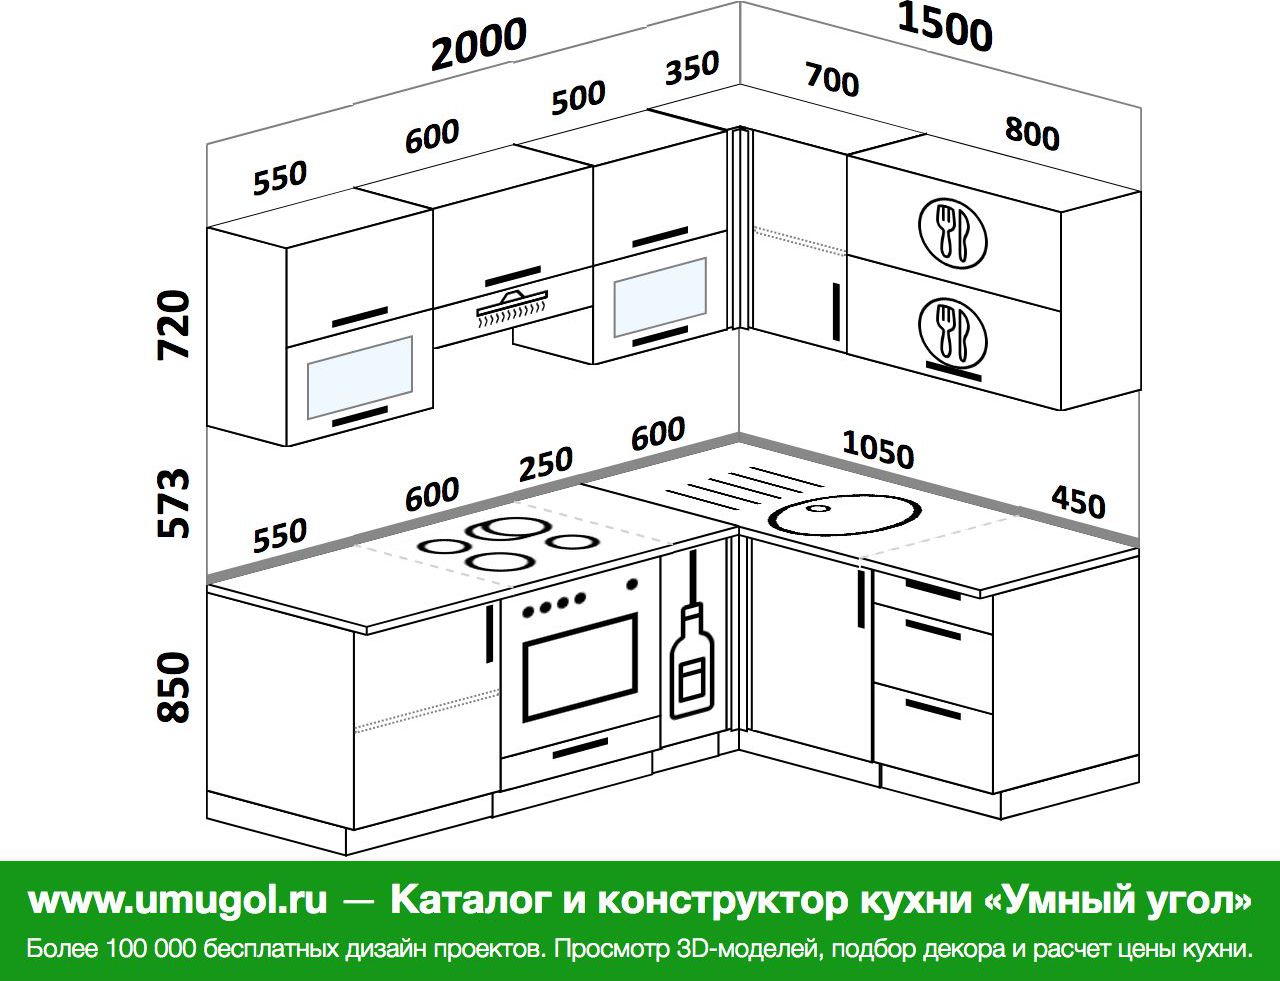 Расположение розеток и выключателей на кухне схема и высота